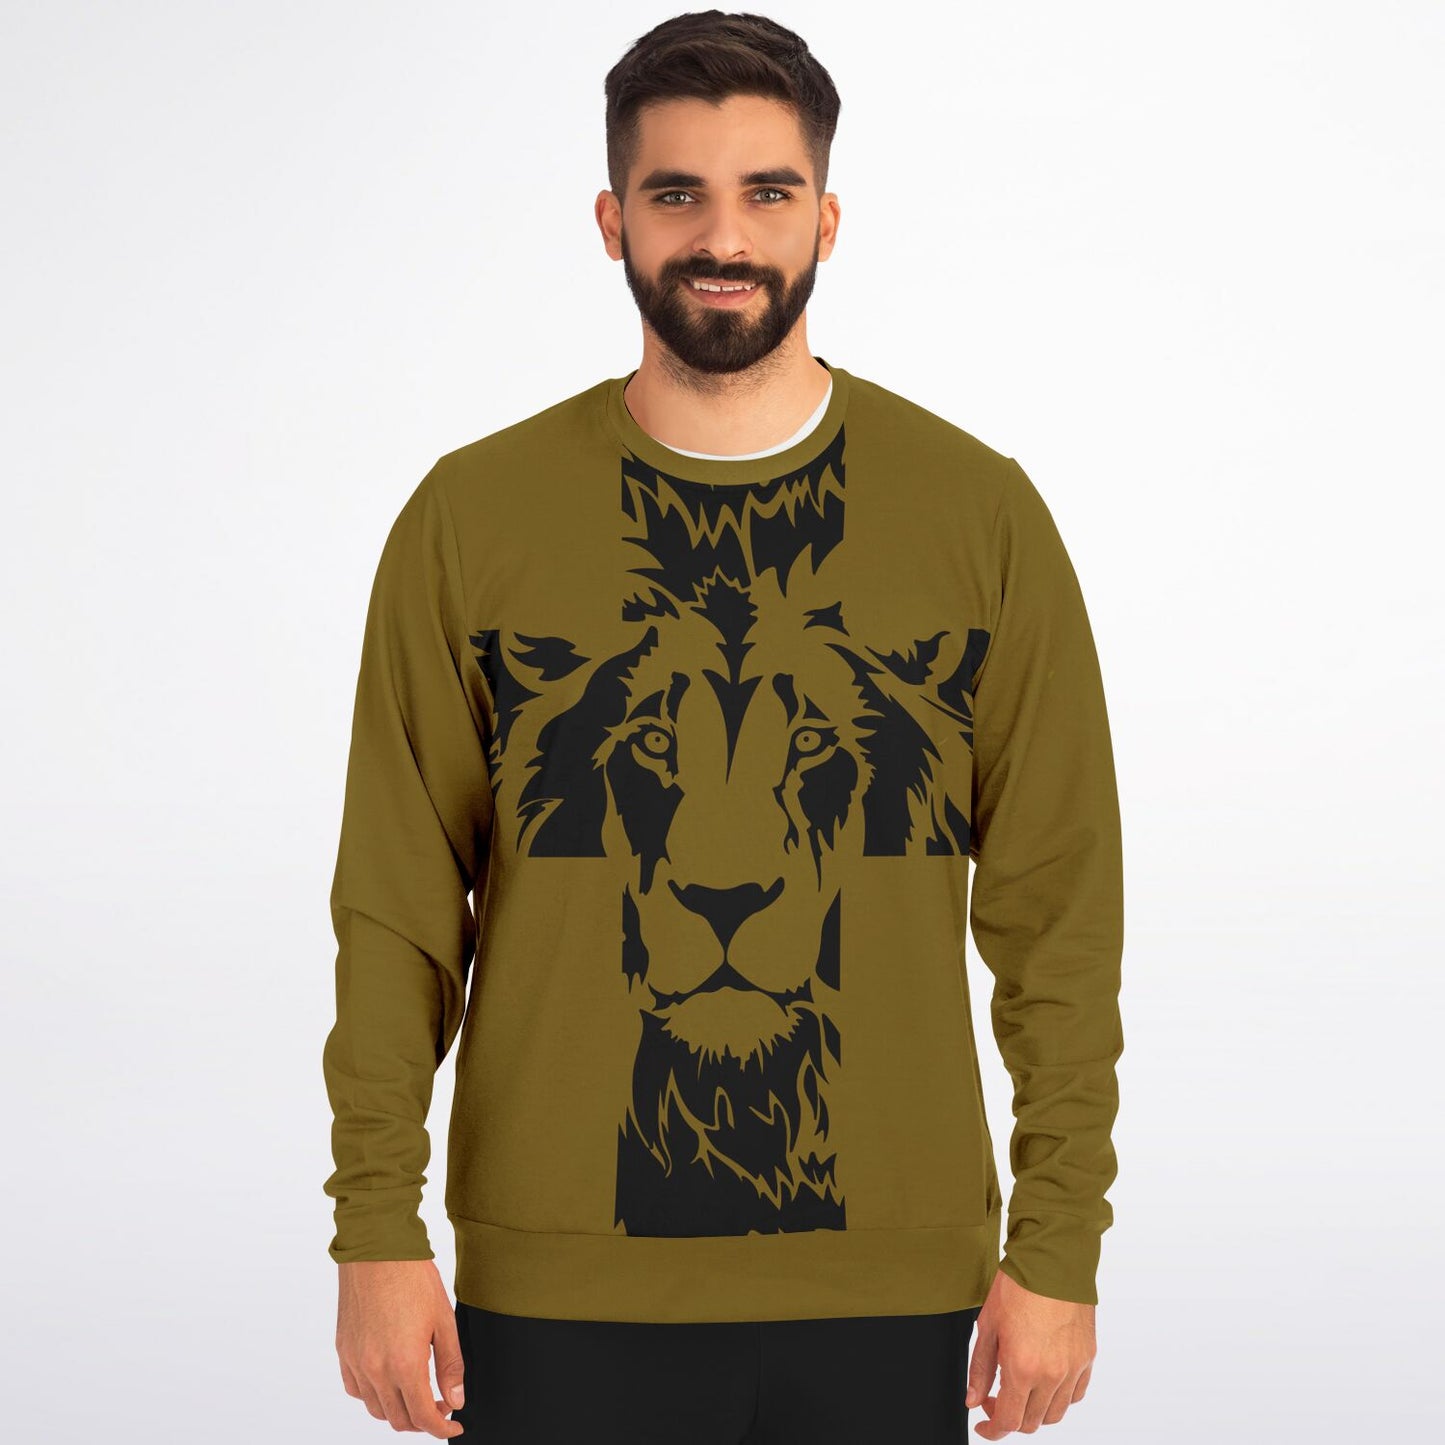 Lion of Judah Cross Gold Premium Sweatshirt